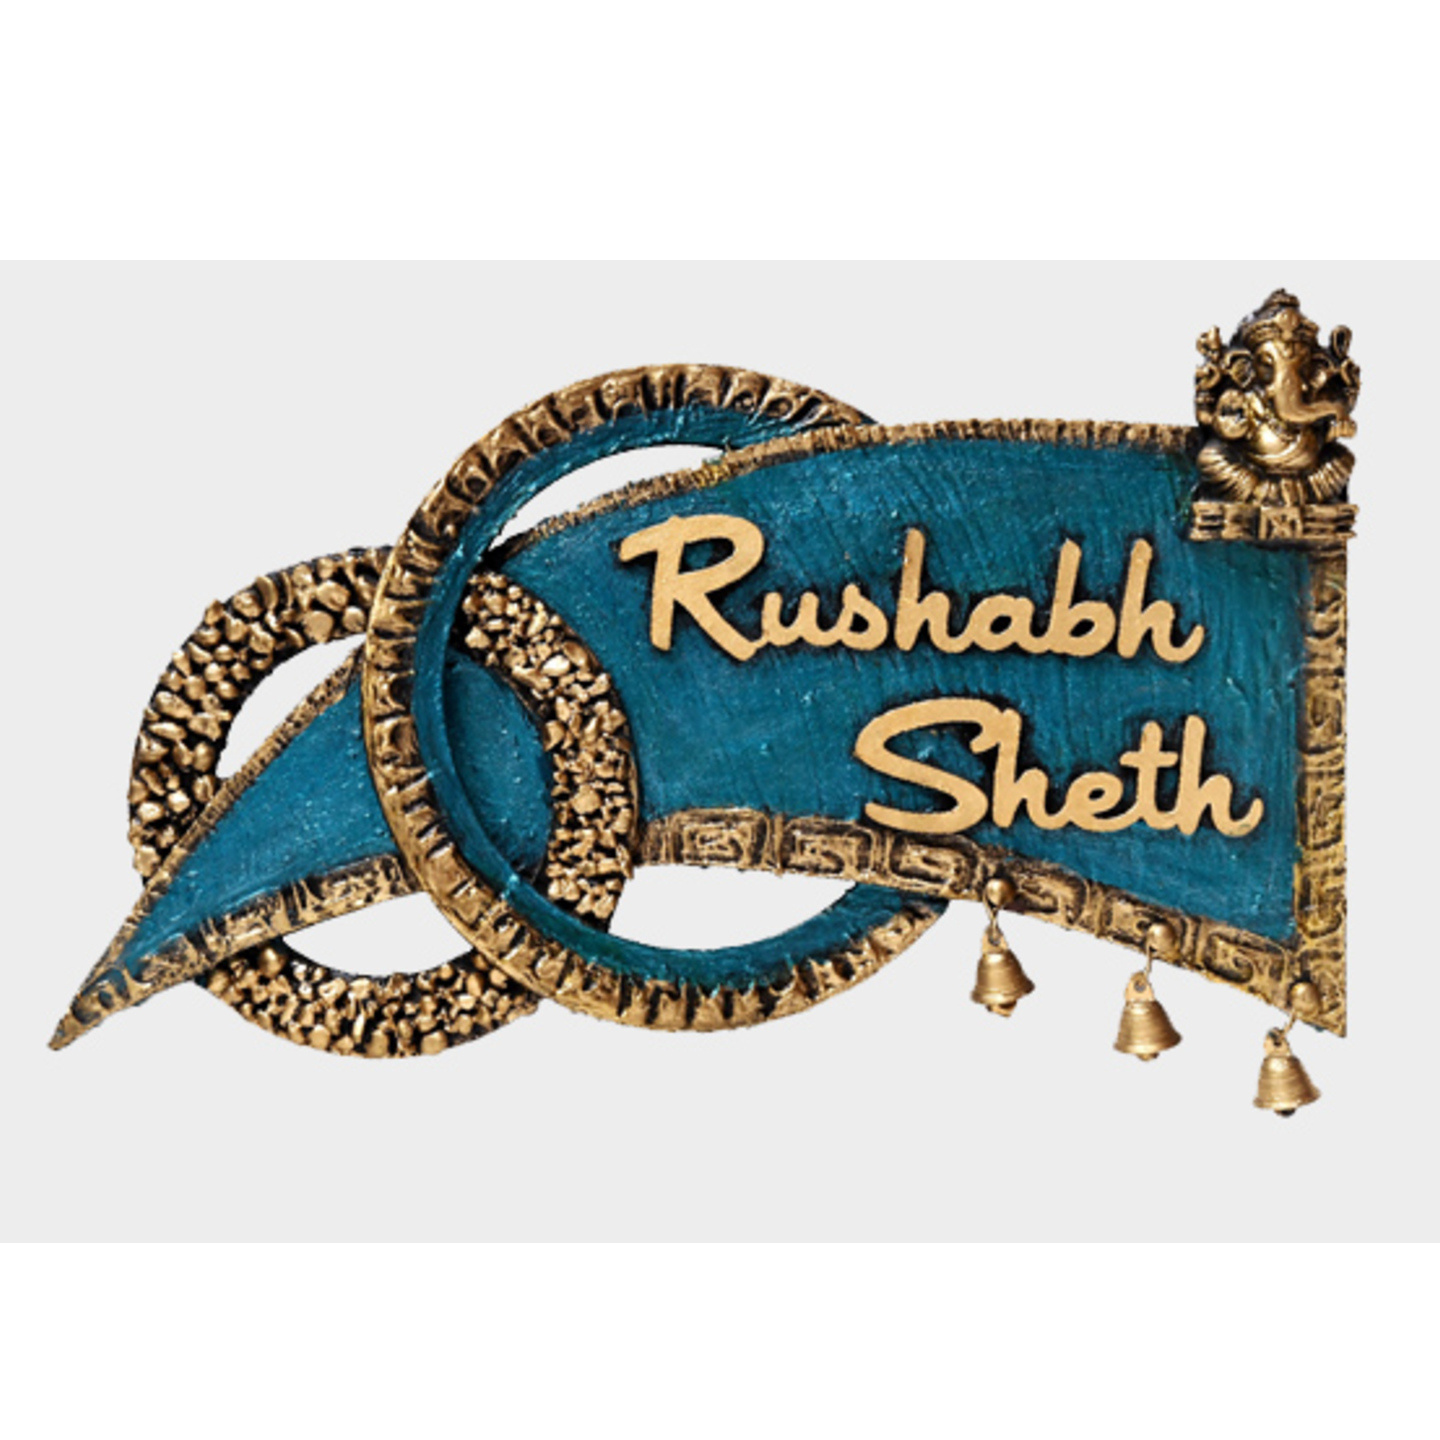 Rushabh Seth